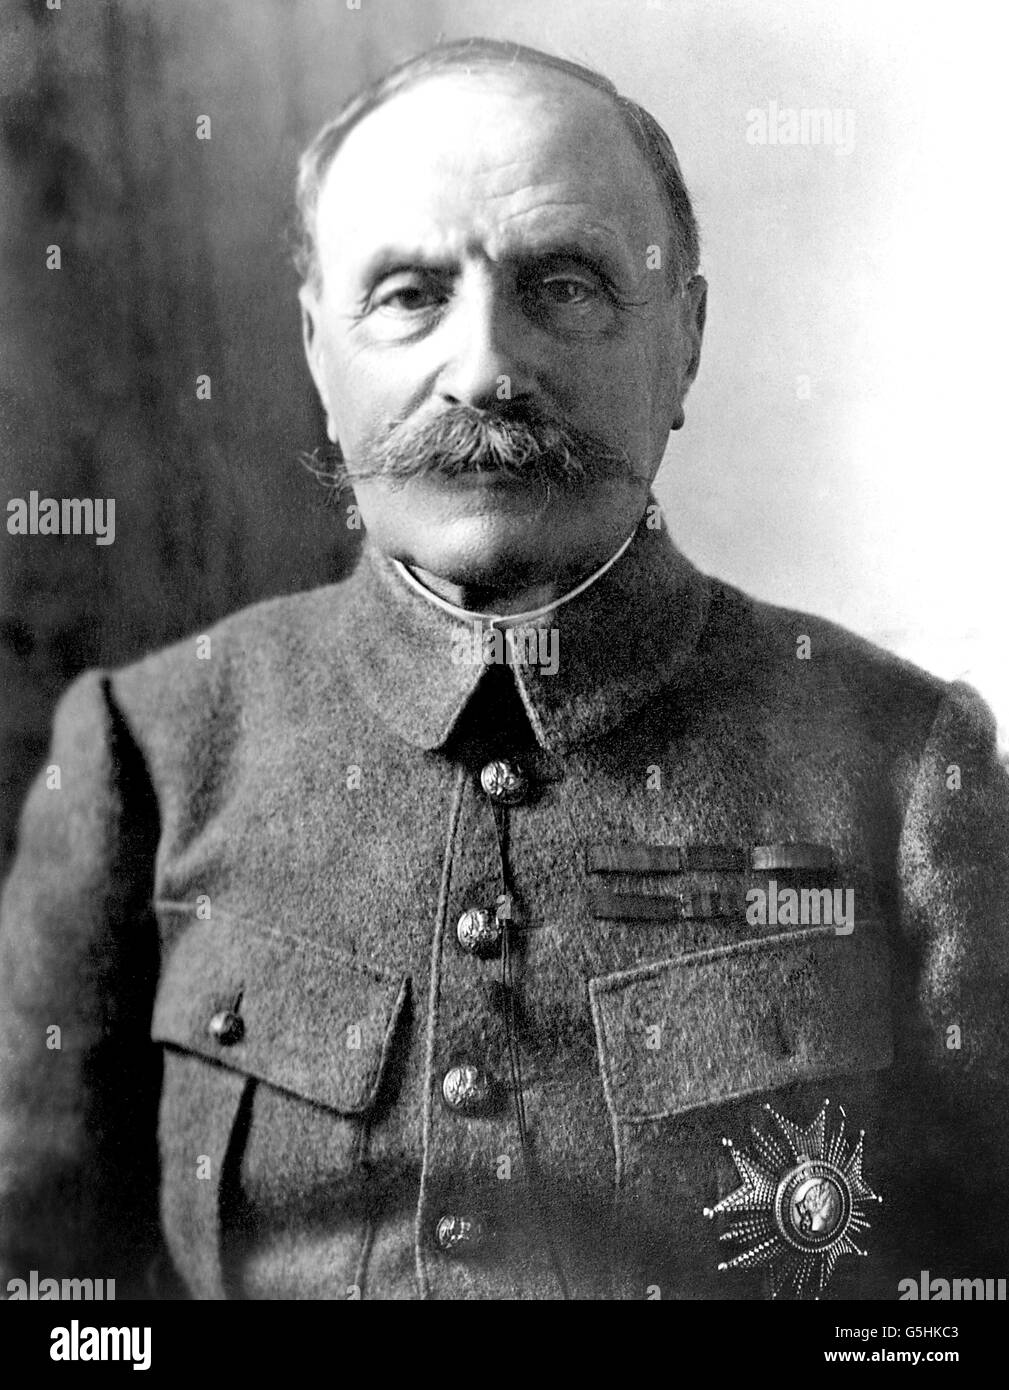 Erster Weltkrieg - Französische Armee - Marschall Foch. Marschall Ferdinand Foch. Stockfoto